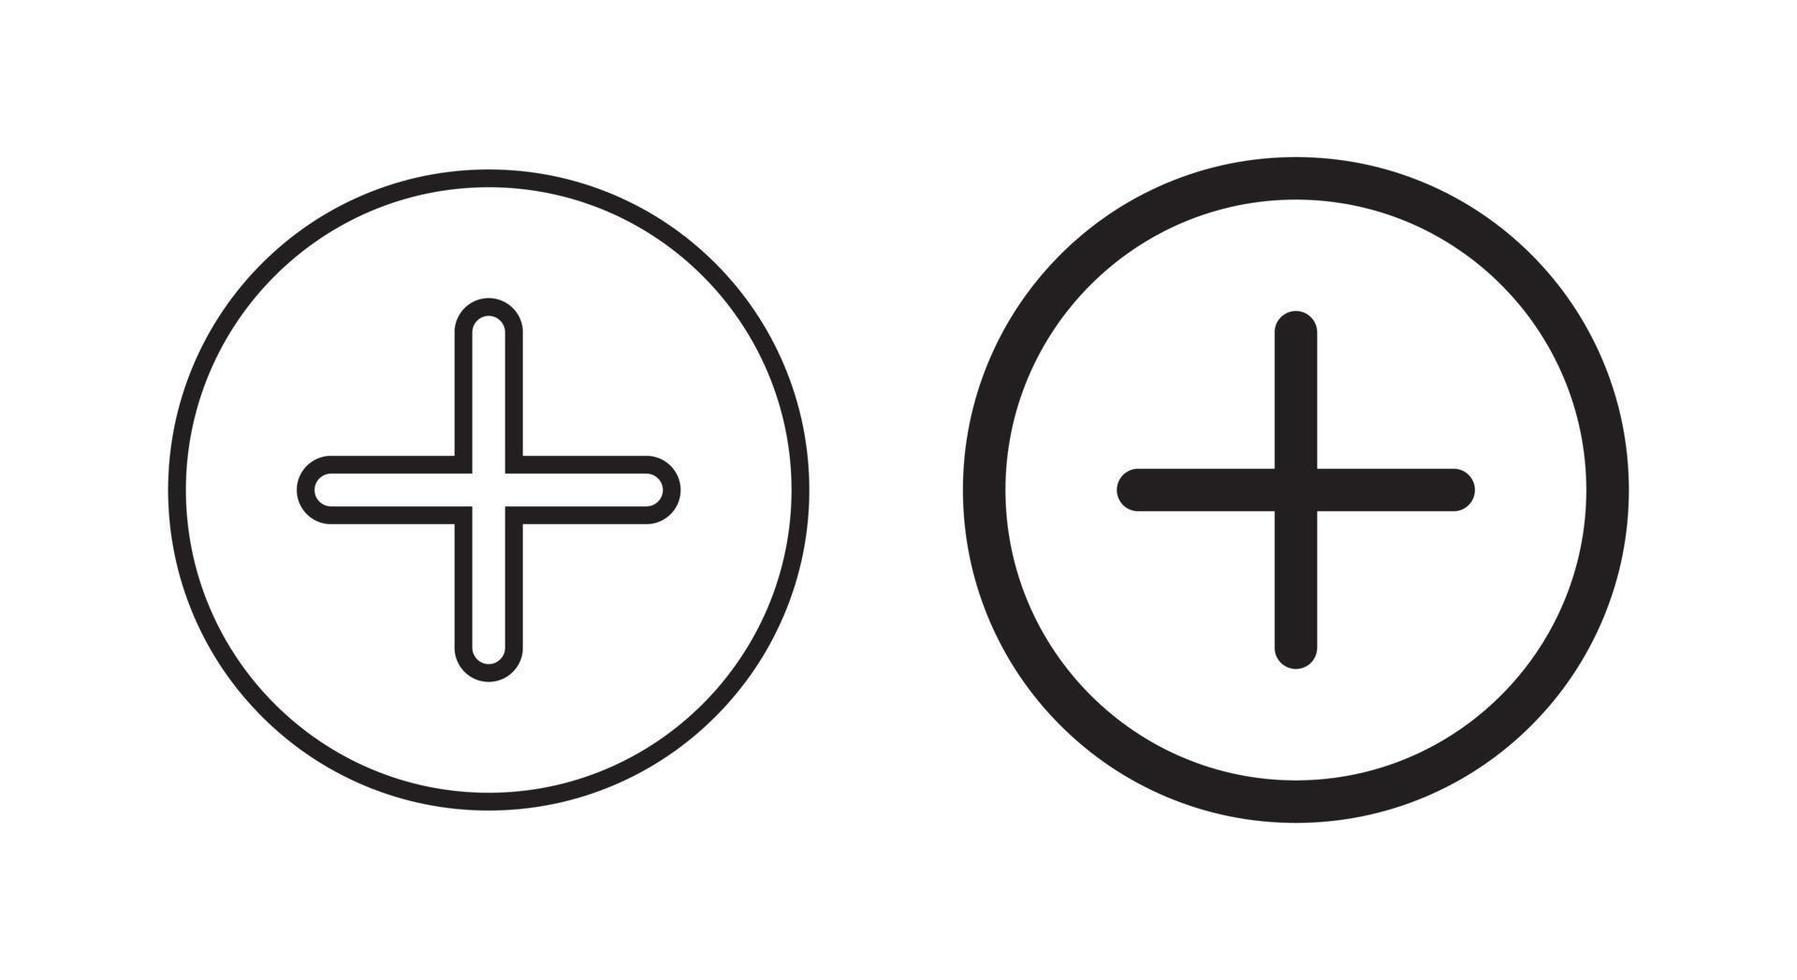 Agregar vector de icono de botón. símbolo de signo más aislado en el fondo de la línea del círculo